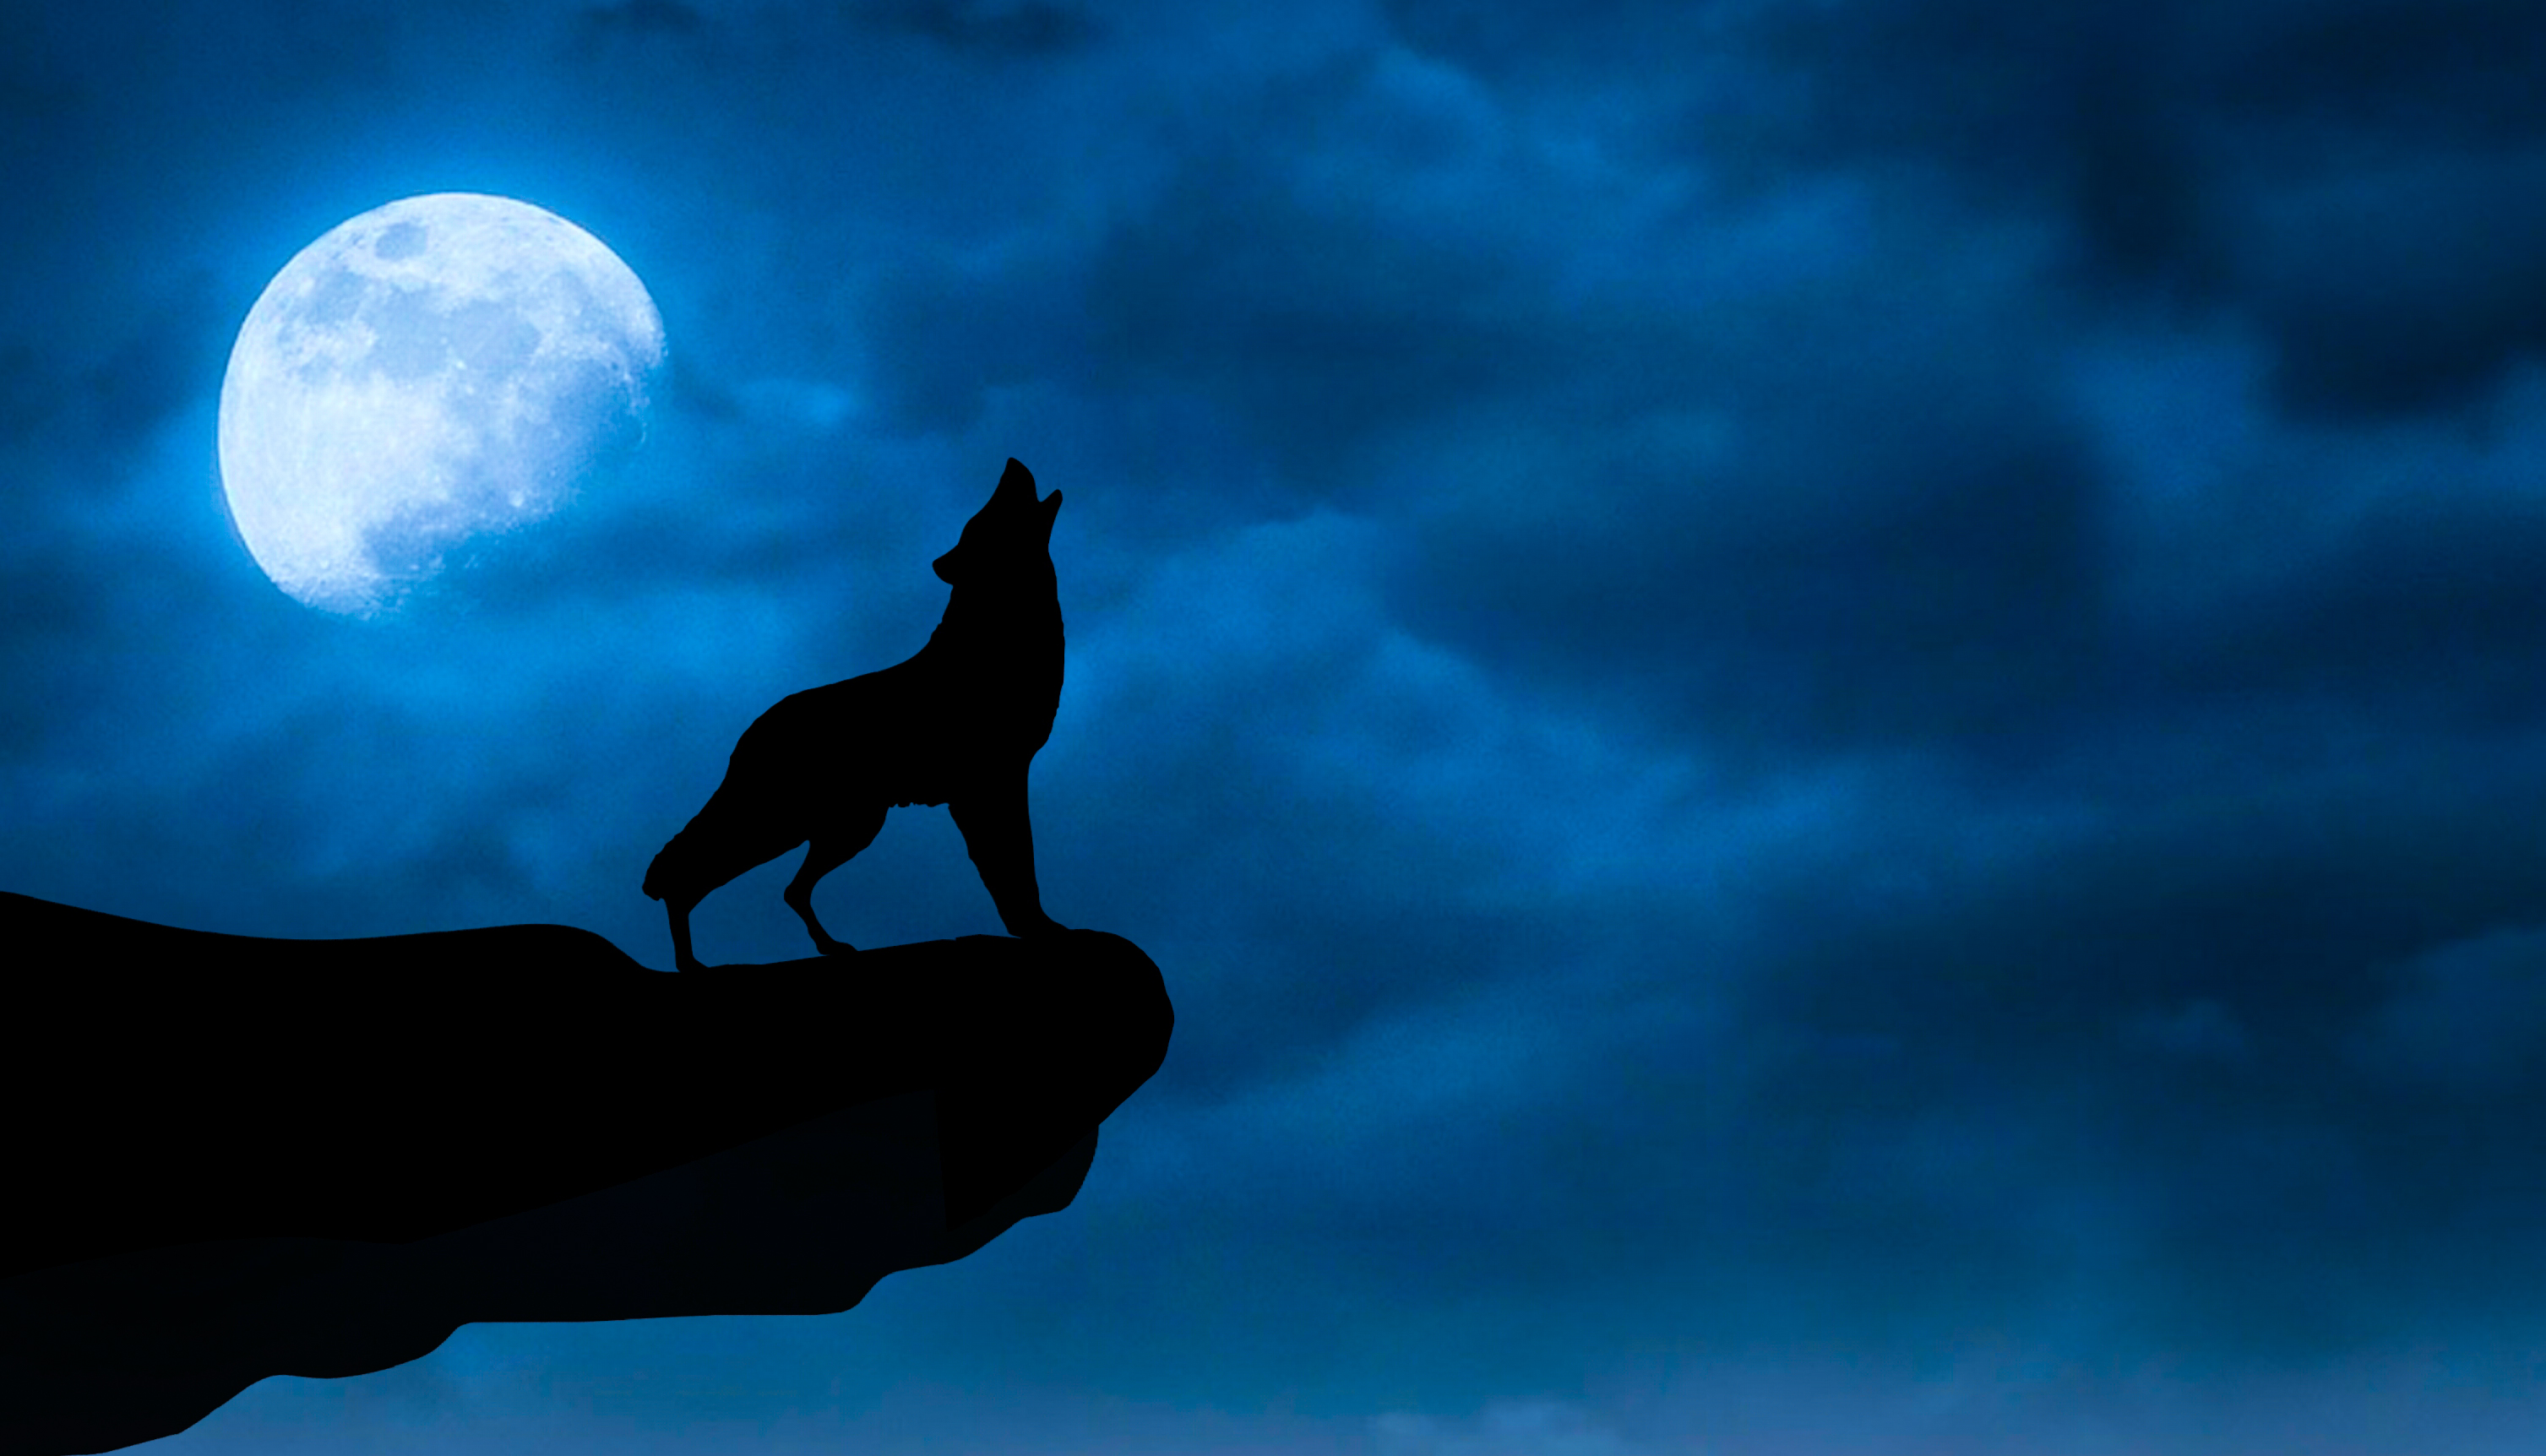 一只狼在悬崖边嚎叫，背景是一轮明月